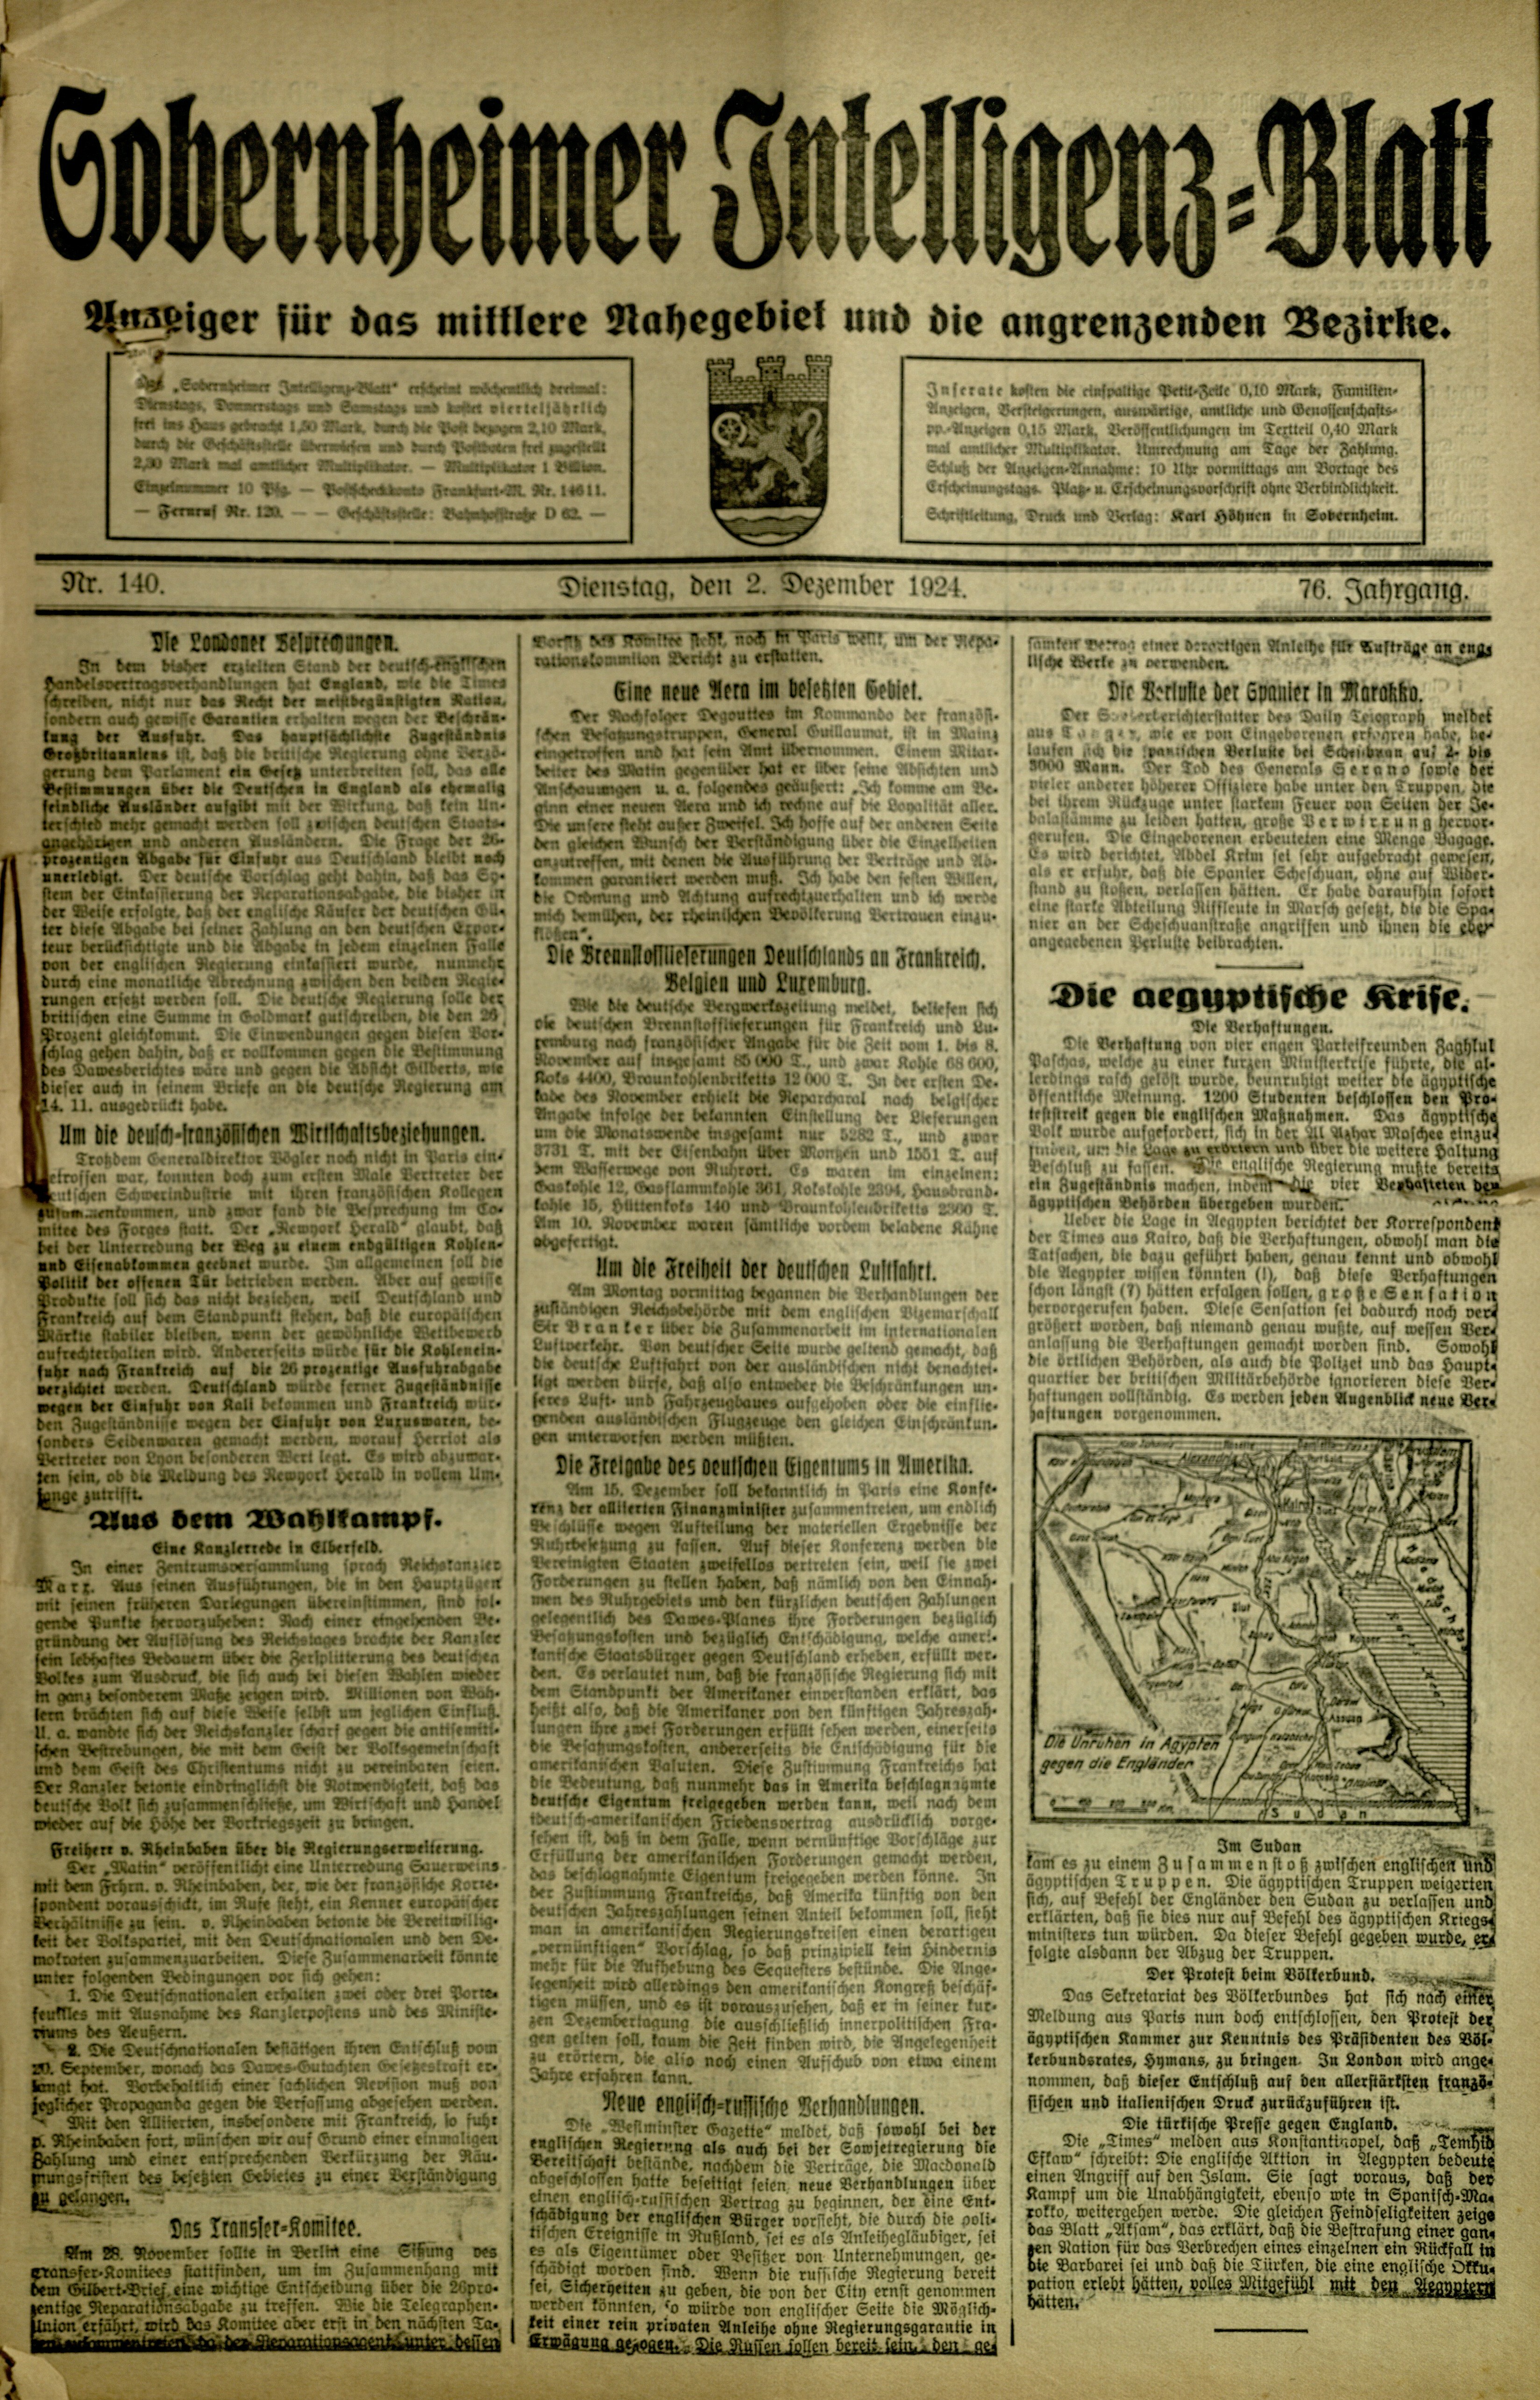 Zeitung: Sobernheimer Intelligenzblatt; Dezember 1924, Jg. 73 Nr. 140 (Heimatmuseum Bad Sobernheim CC BY-NC-SA)